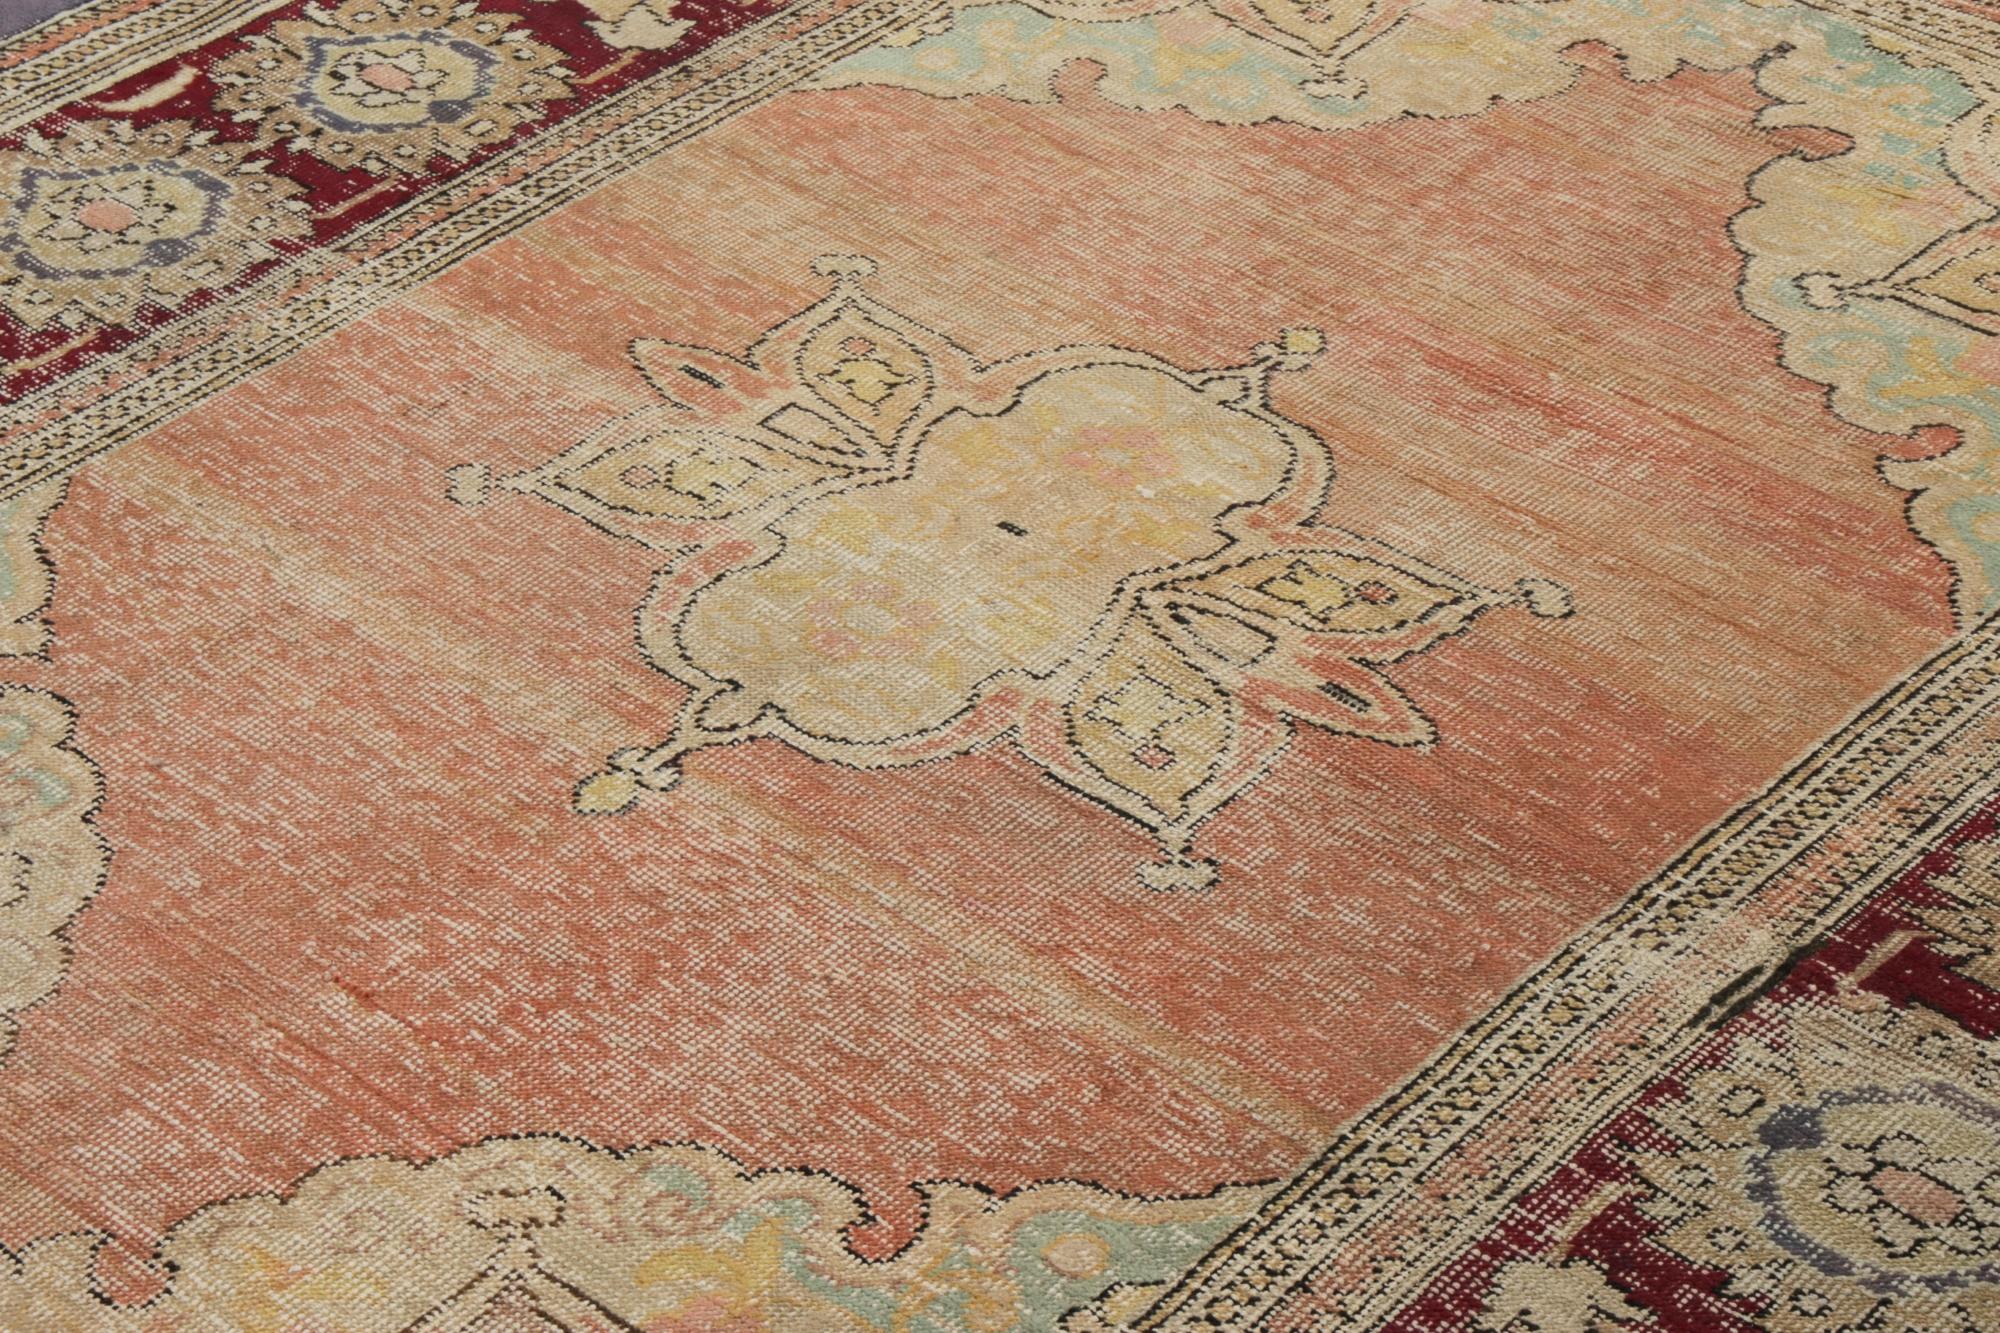 Dieser antike 8x10 Hereke-Teppich ist eine seltene neue Auswahl in der Antique & Vintage Collection'S von Rug & Kilim - handgeknüpft in Wolle um 1920-1930.

Über das Design: 

Dieser Teppich zeigt ein beige- und goldfarbenes Blumenmedaillon auf